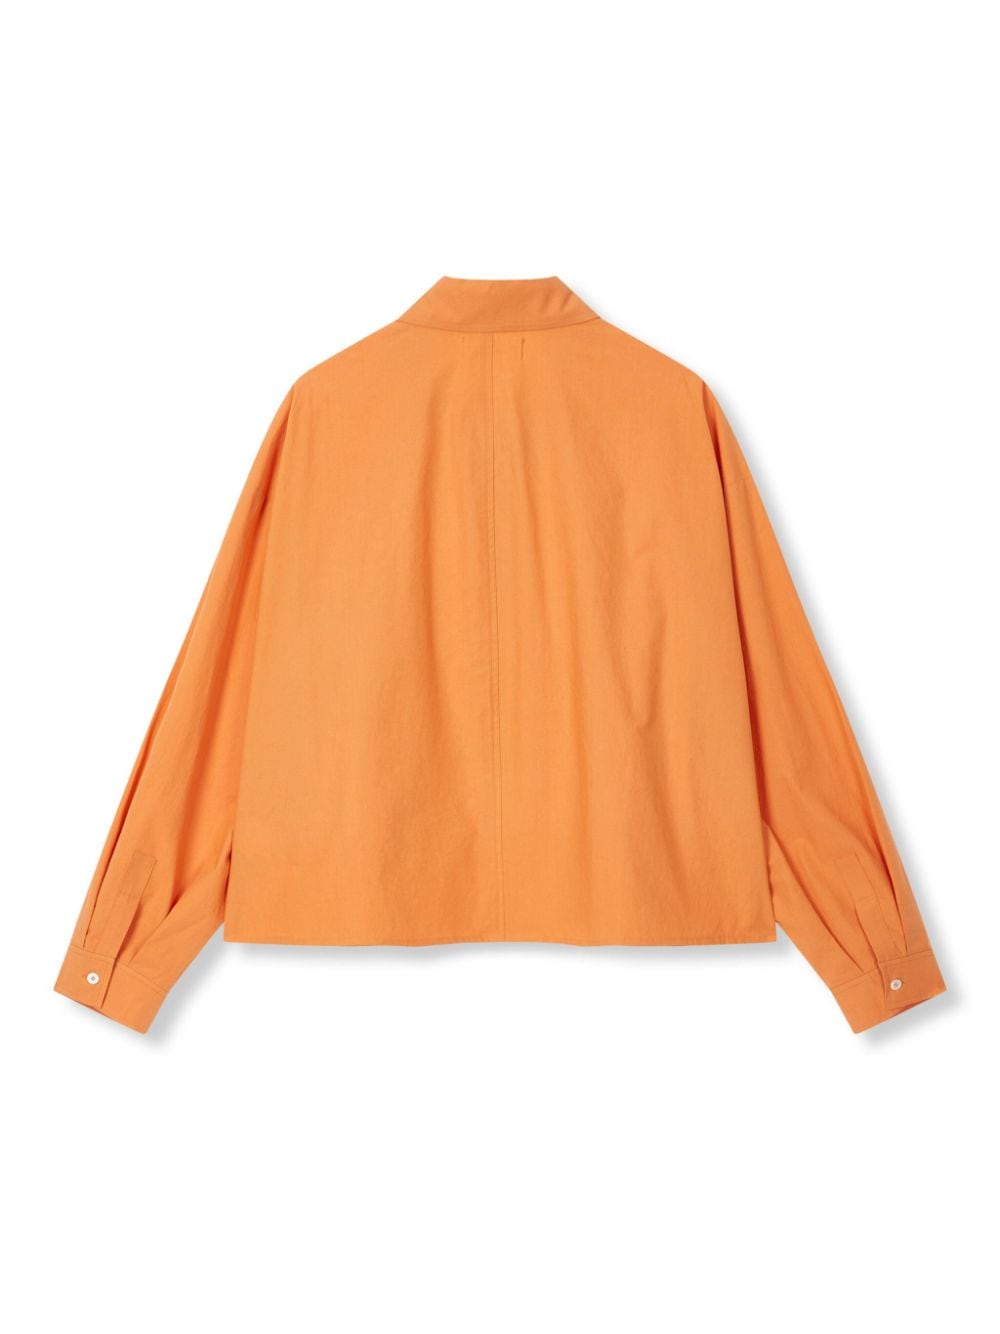 STUDIO TOMBOY pointed-collar cotton shirt - Oranje